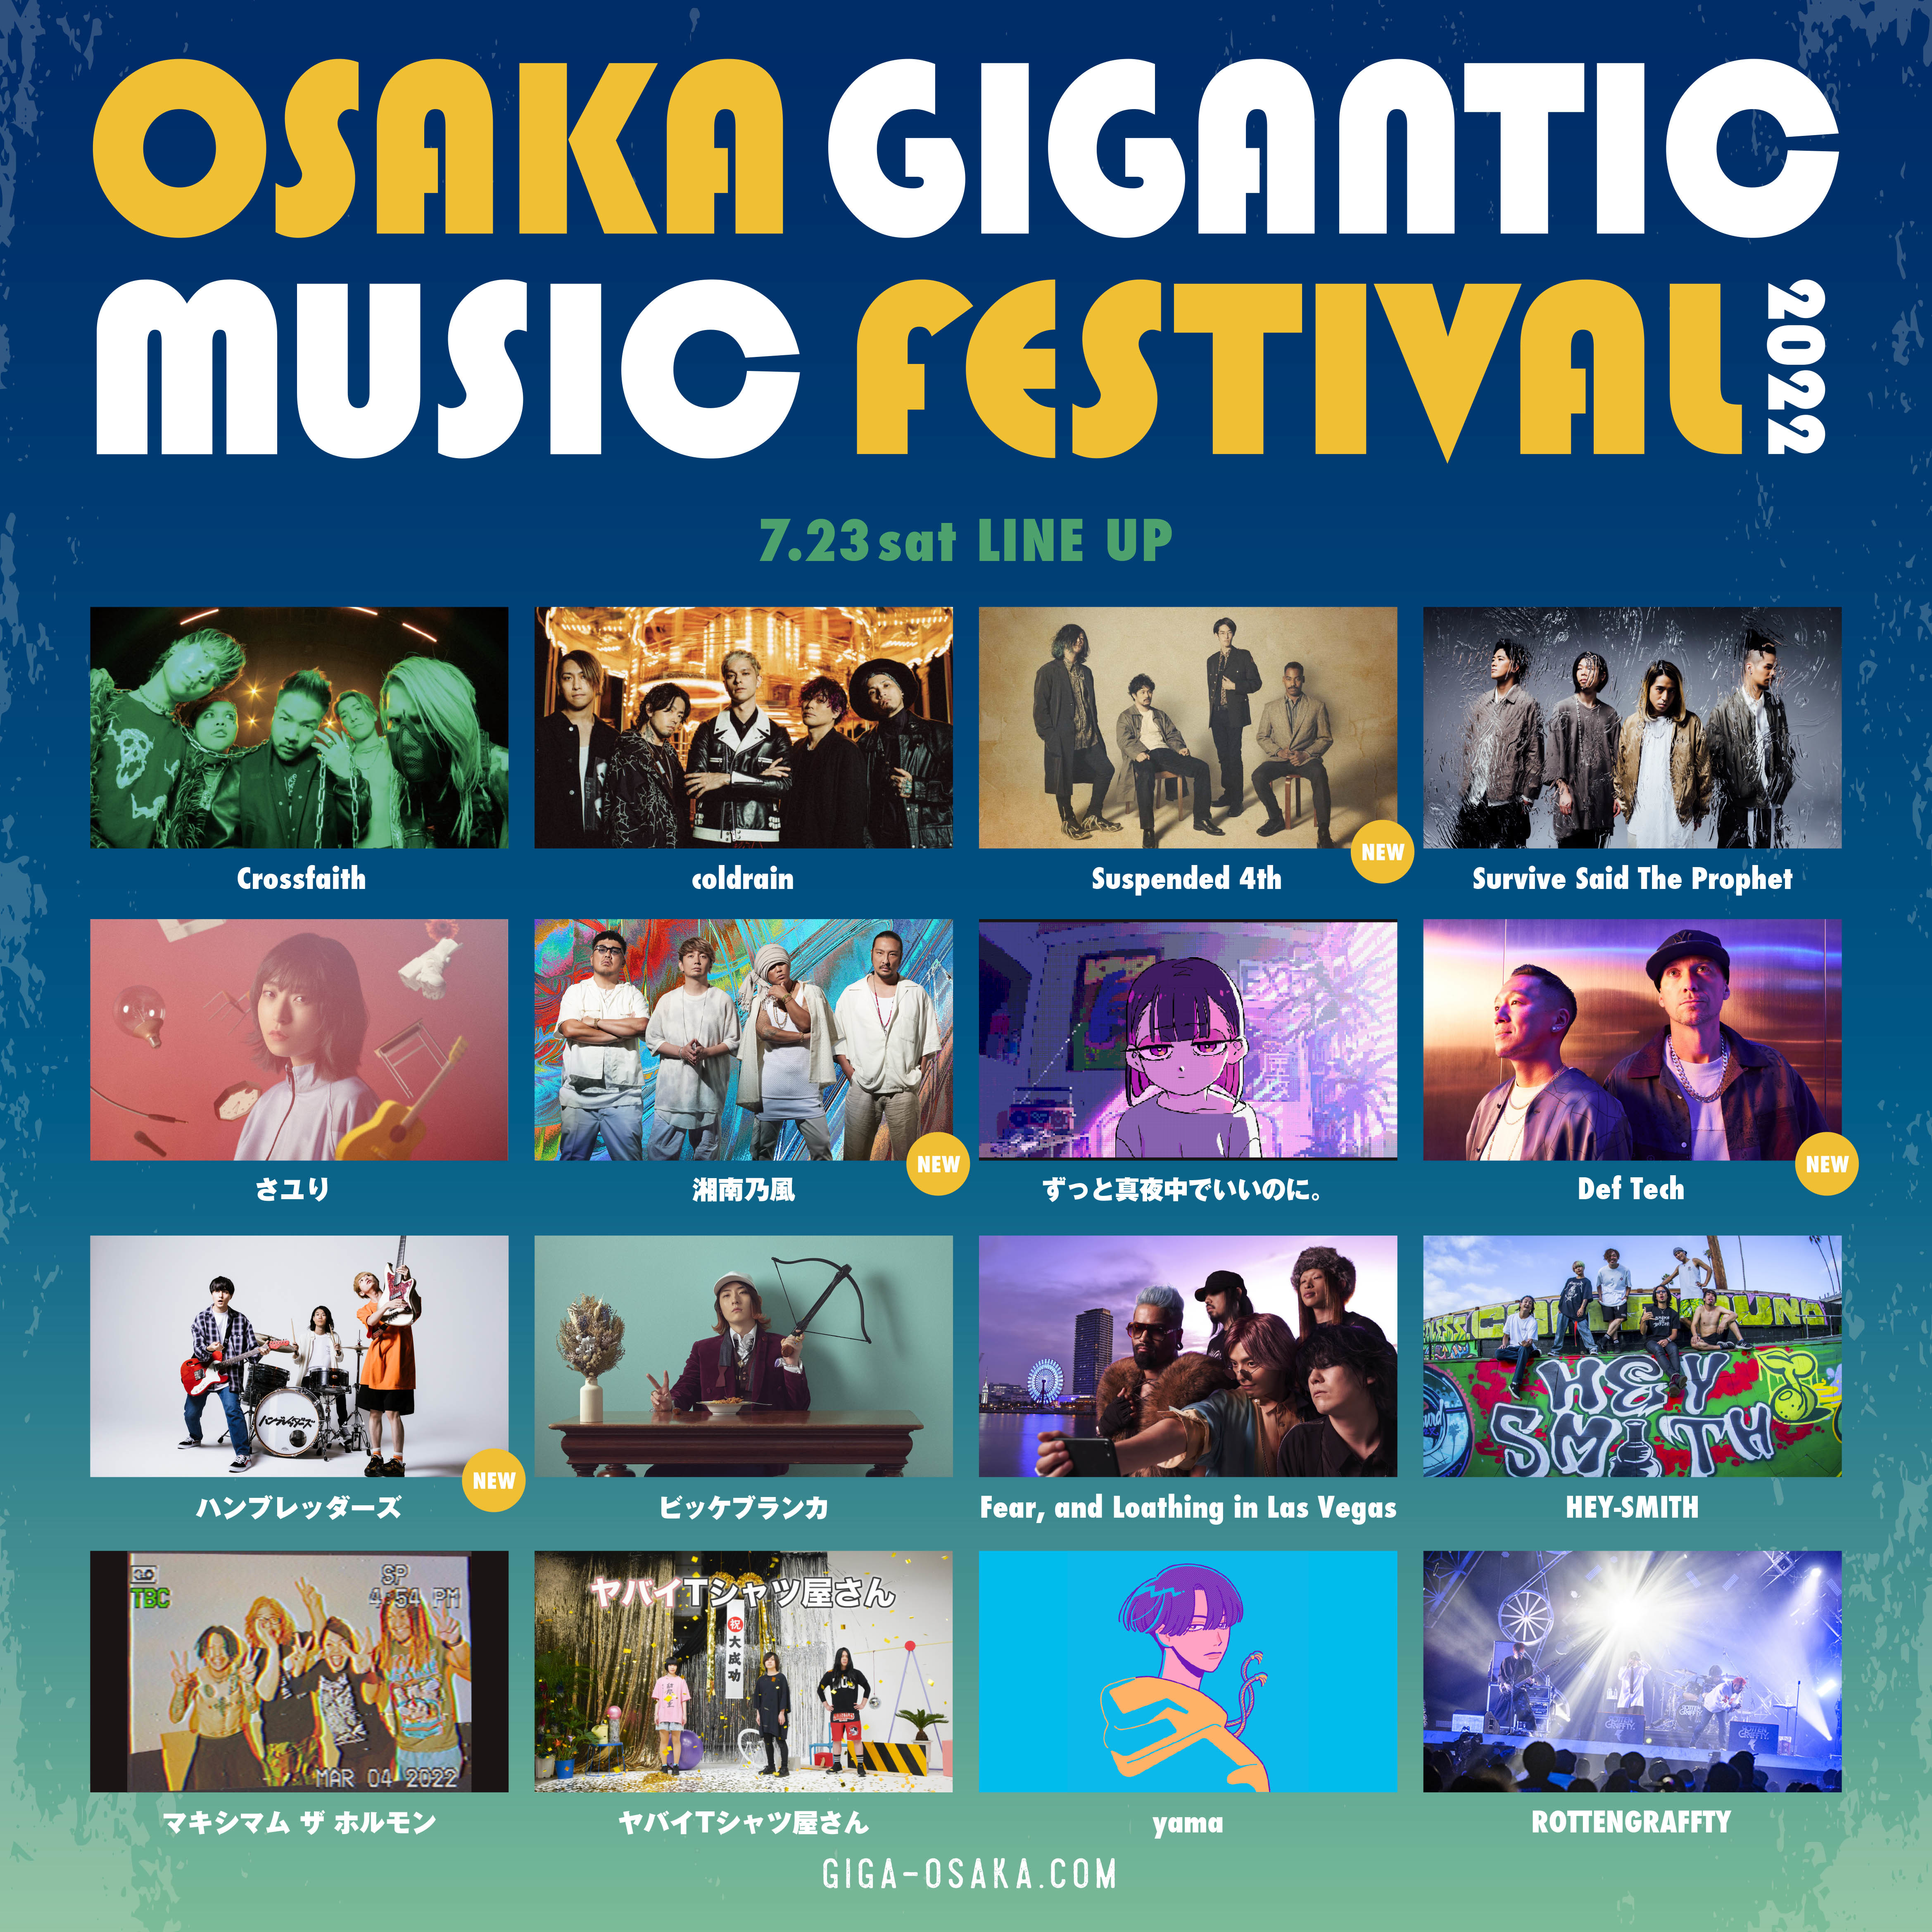 『OSAKA GIGANTIC MUSIC FESTIVAL 2022』